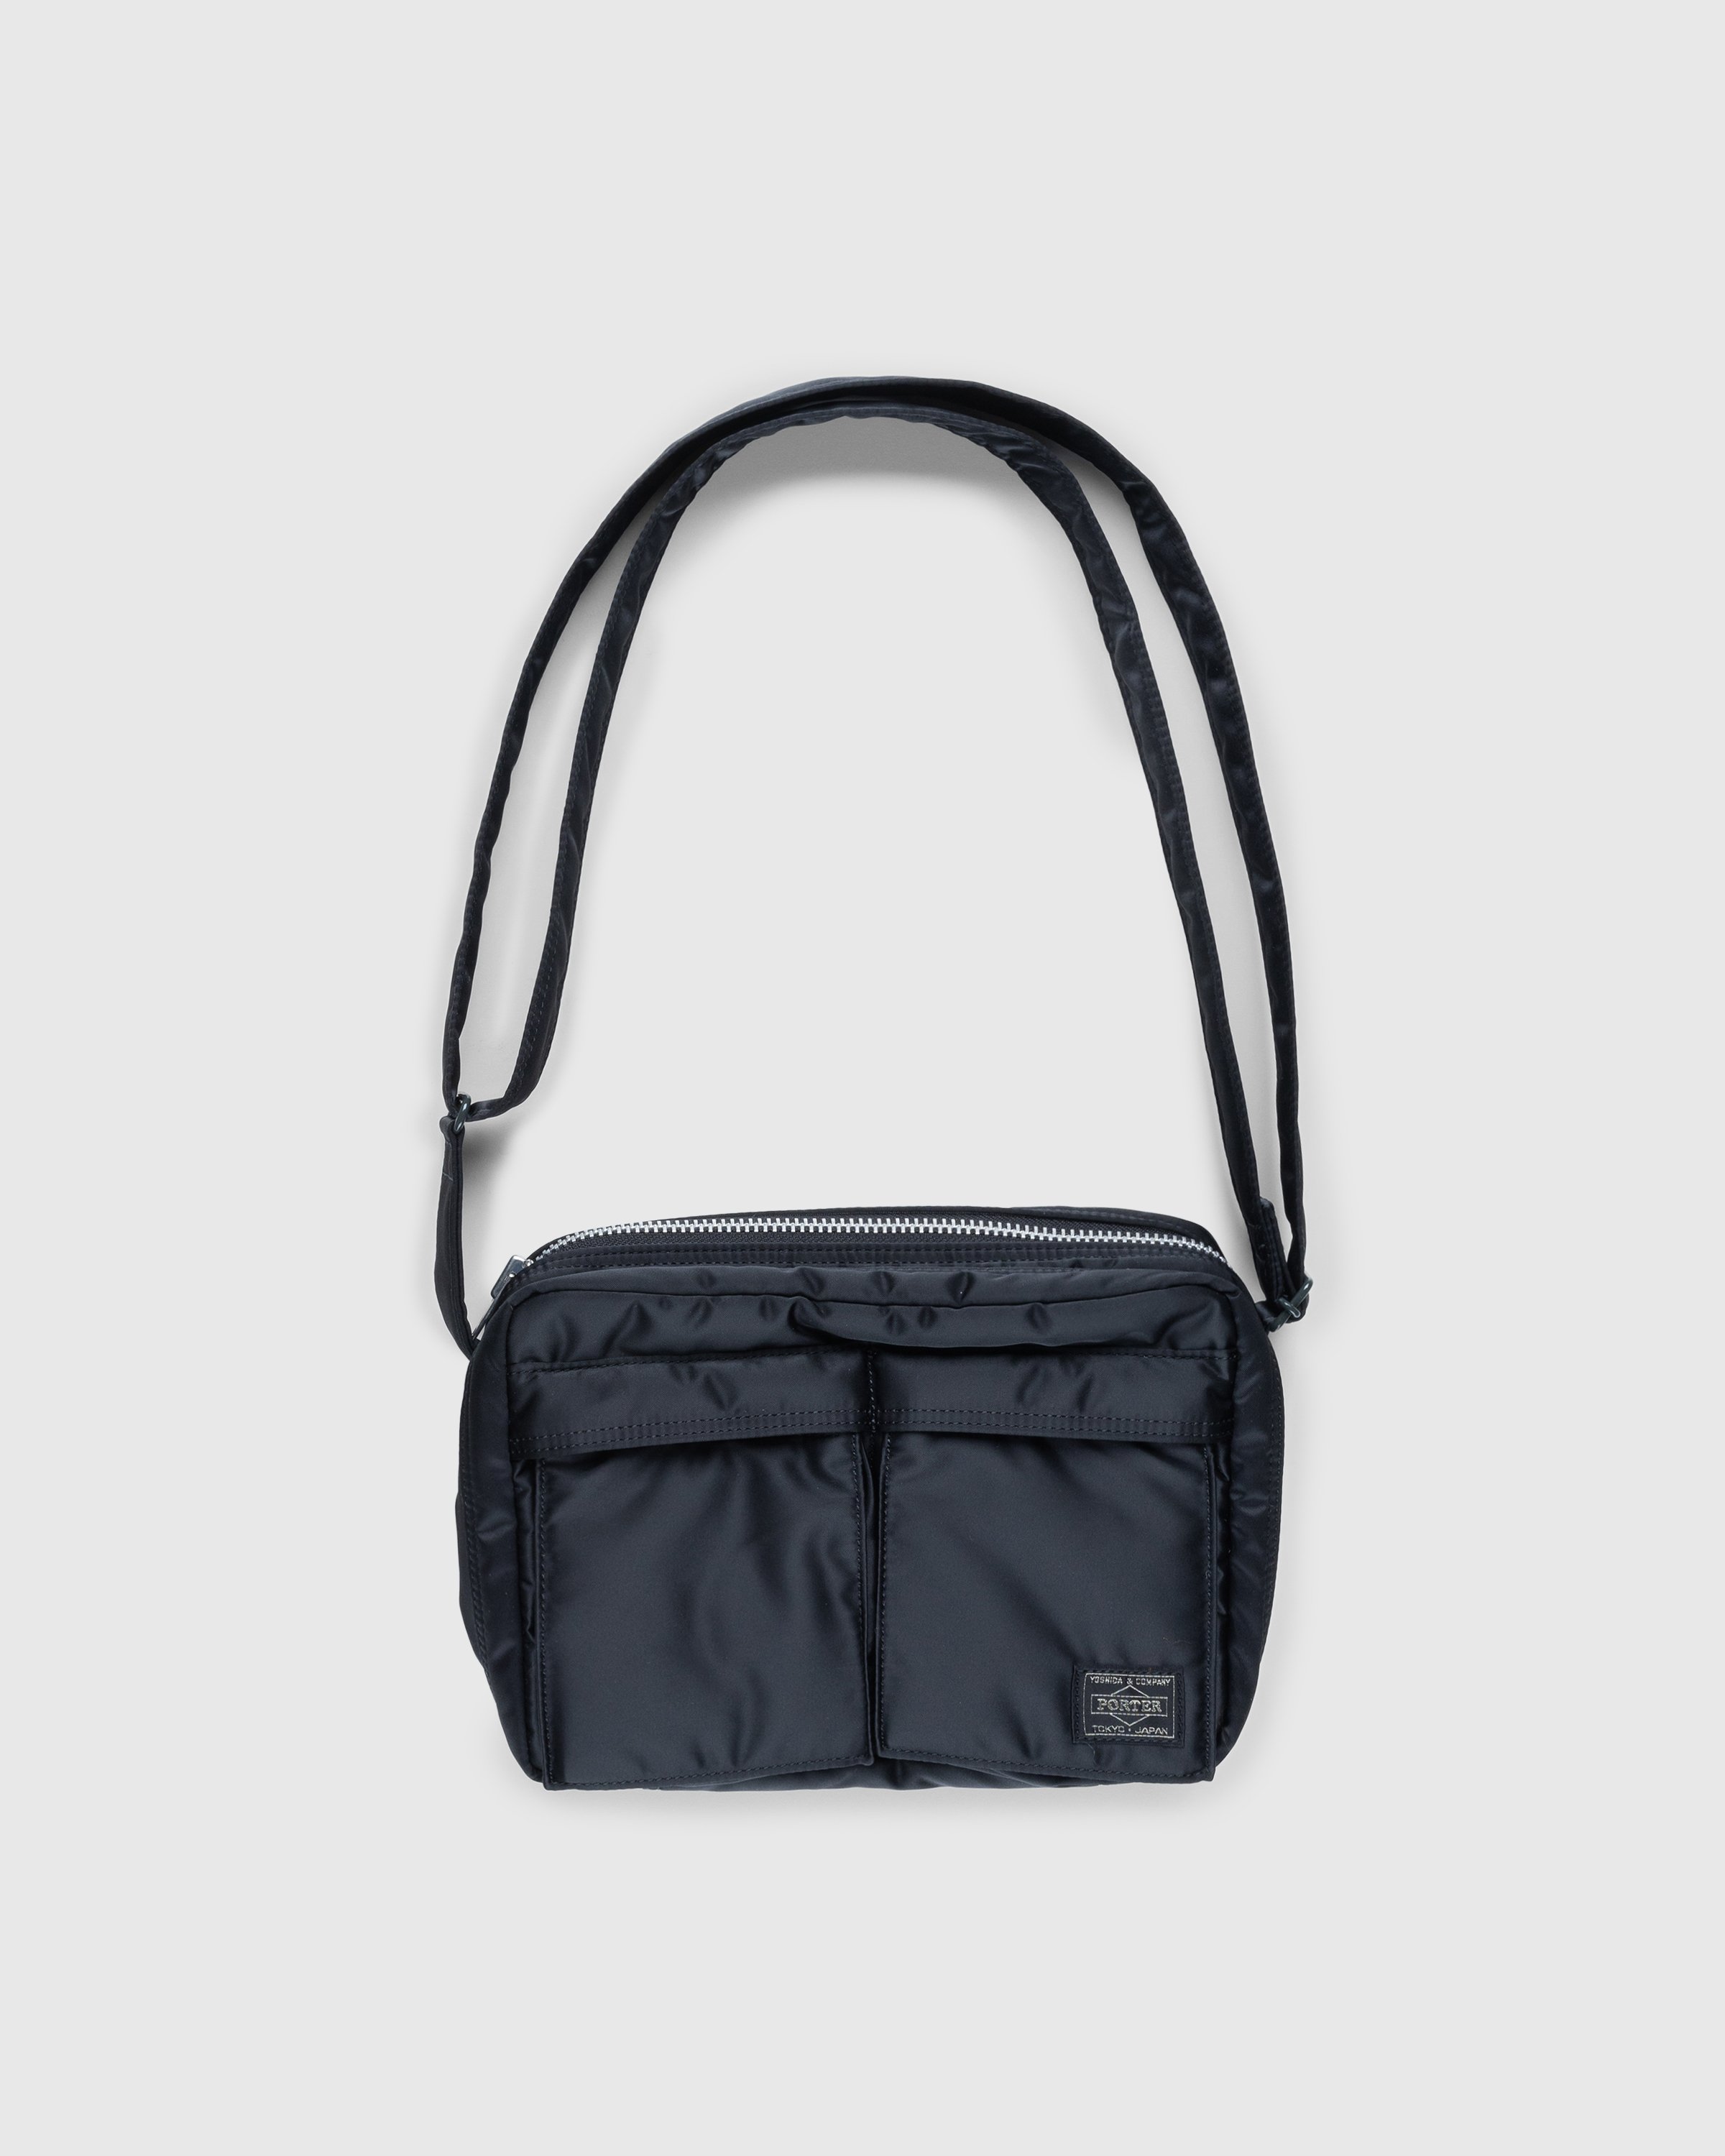 Porter-Yoshida & Co. - Tanker Shoulder Bag Black - Accessories - Black - Image 1